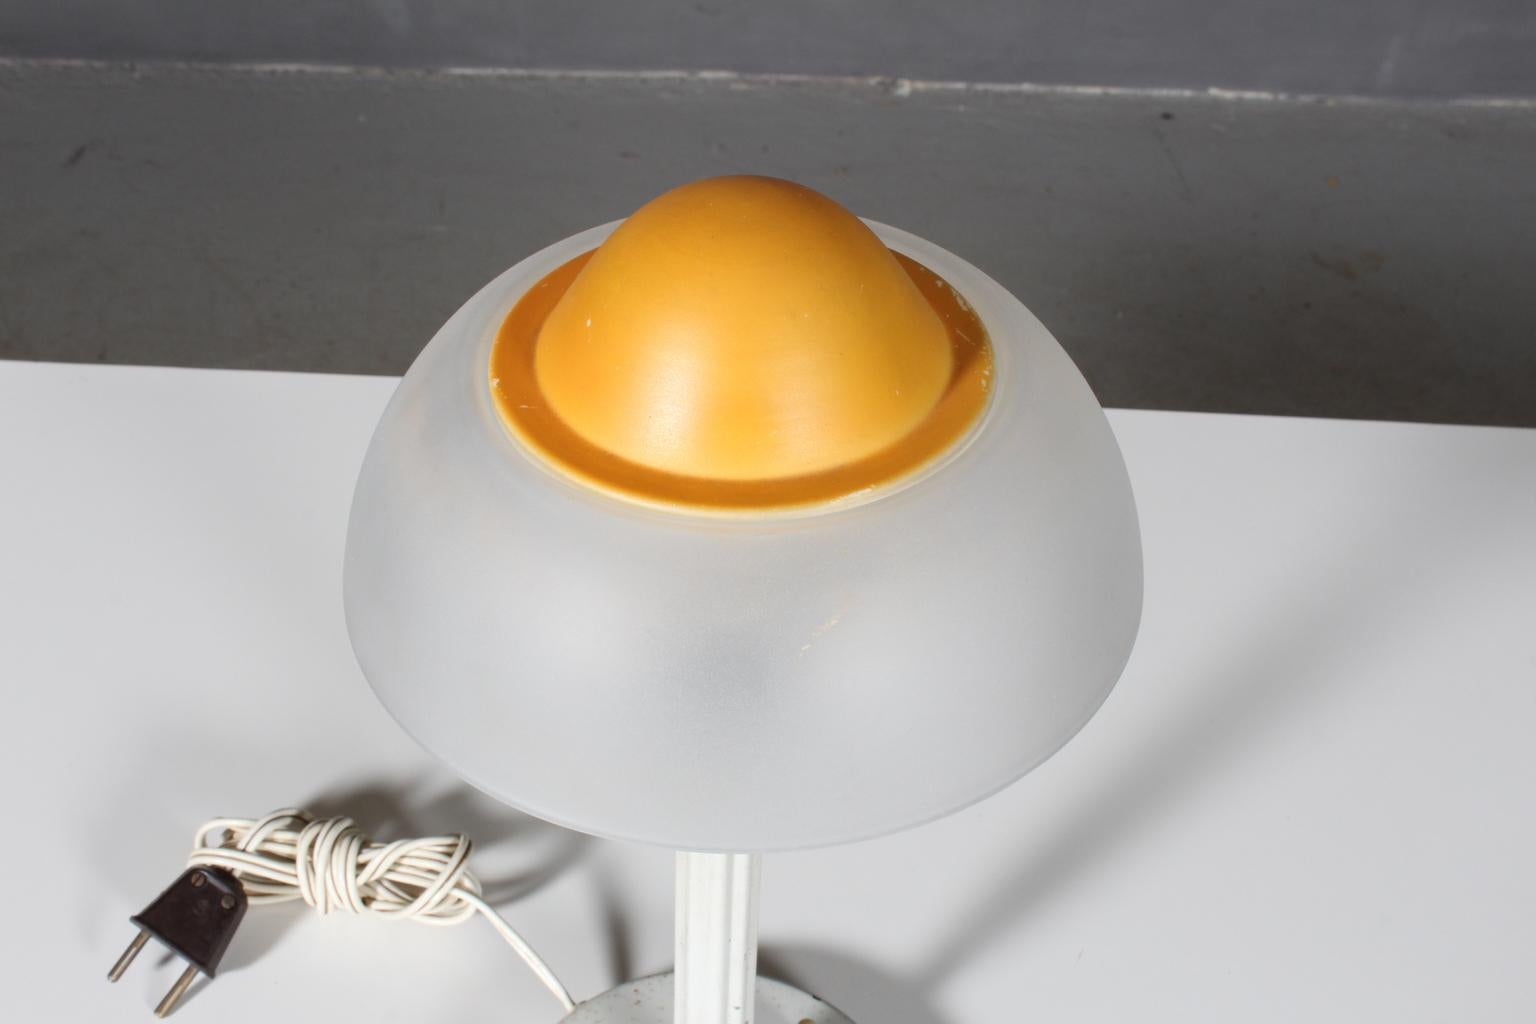 Lampe de table Fog & Mørup en laiton.

Teintes de verre opalescent.

Fabriqué par Fog & Mørup dans les années 1960, modèle Fried egg.